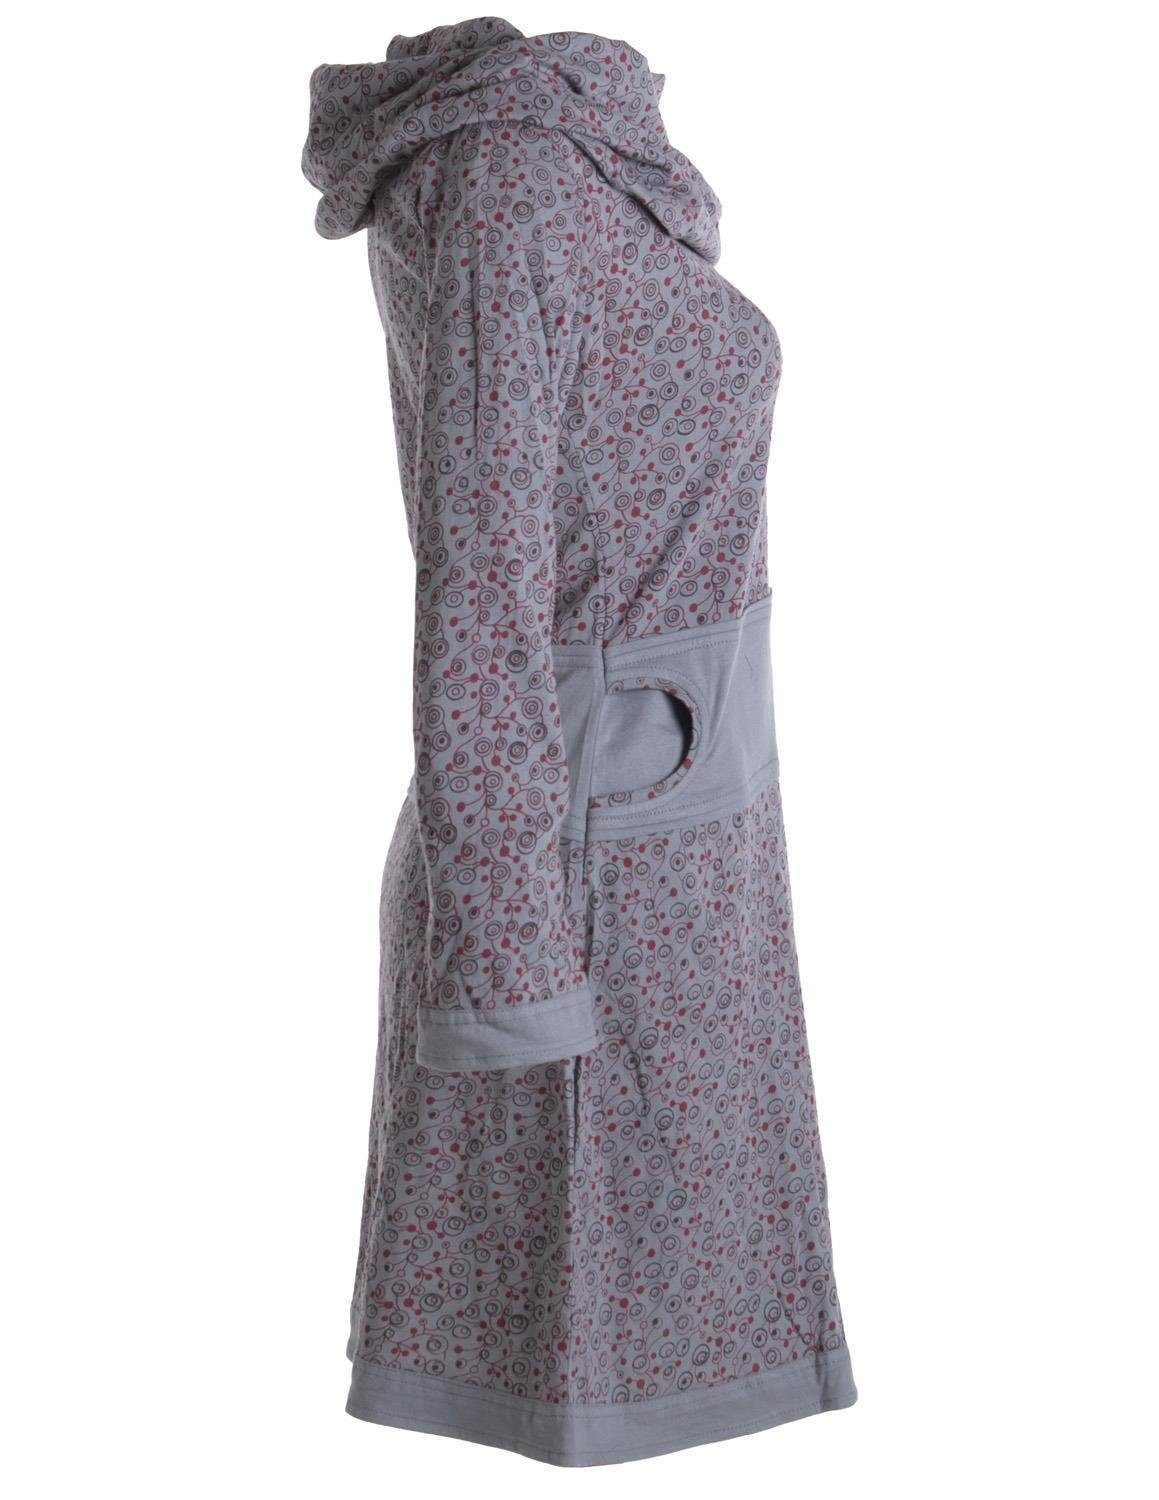 Baumwolle Kleid Hippie Bedrucktes mit grau Style Boho, Vishes Schalkragen Ethno, aus Jerseykleid Goa,